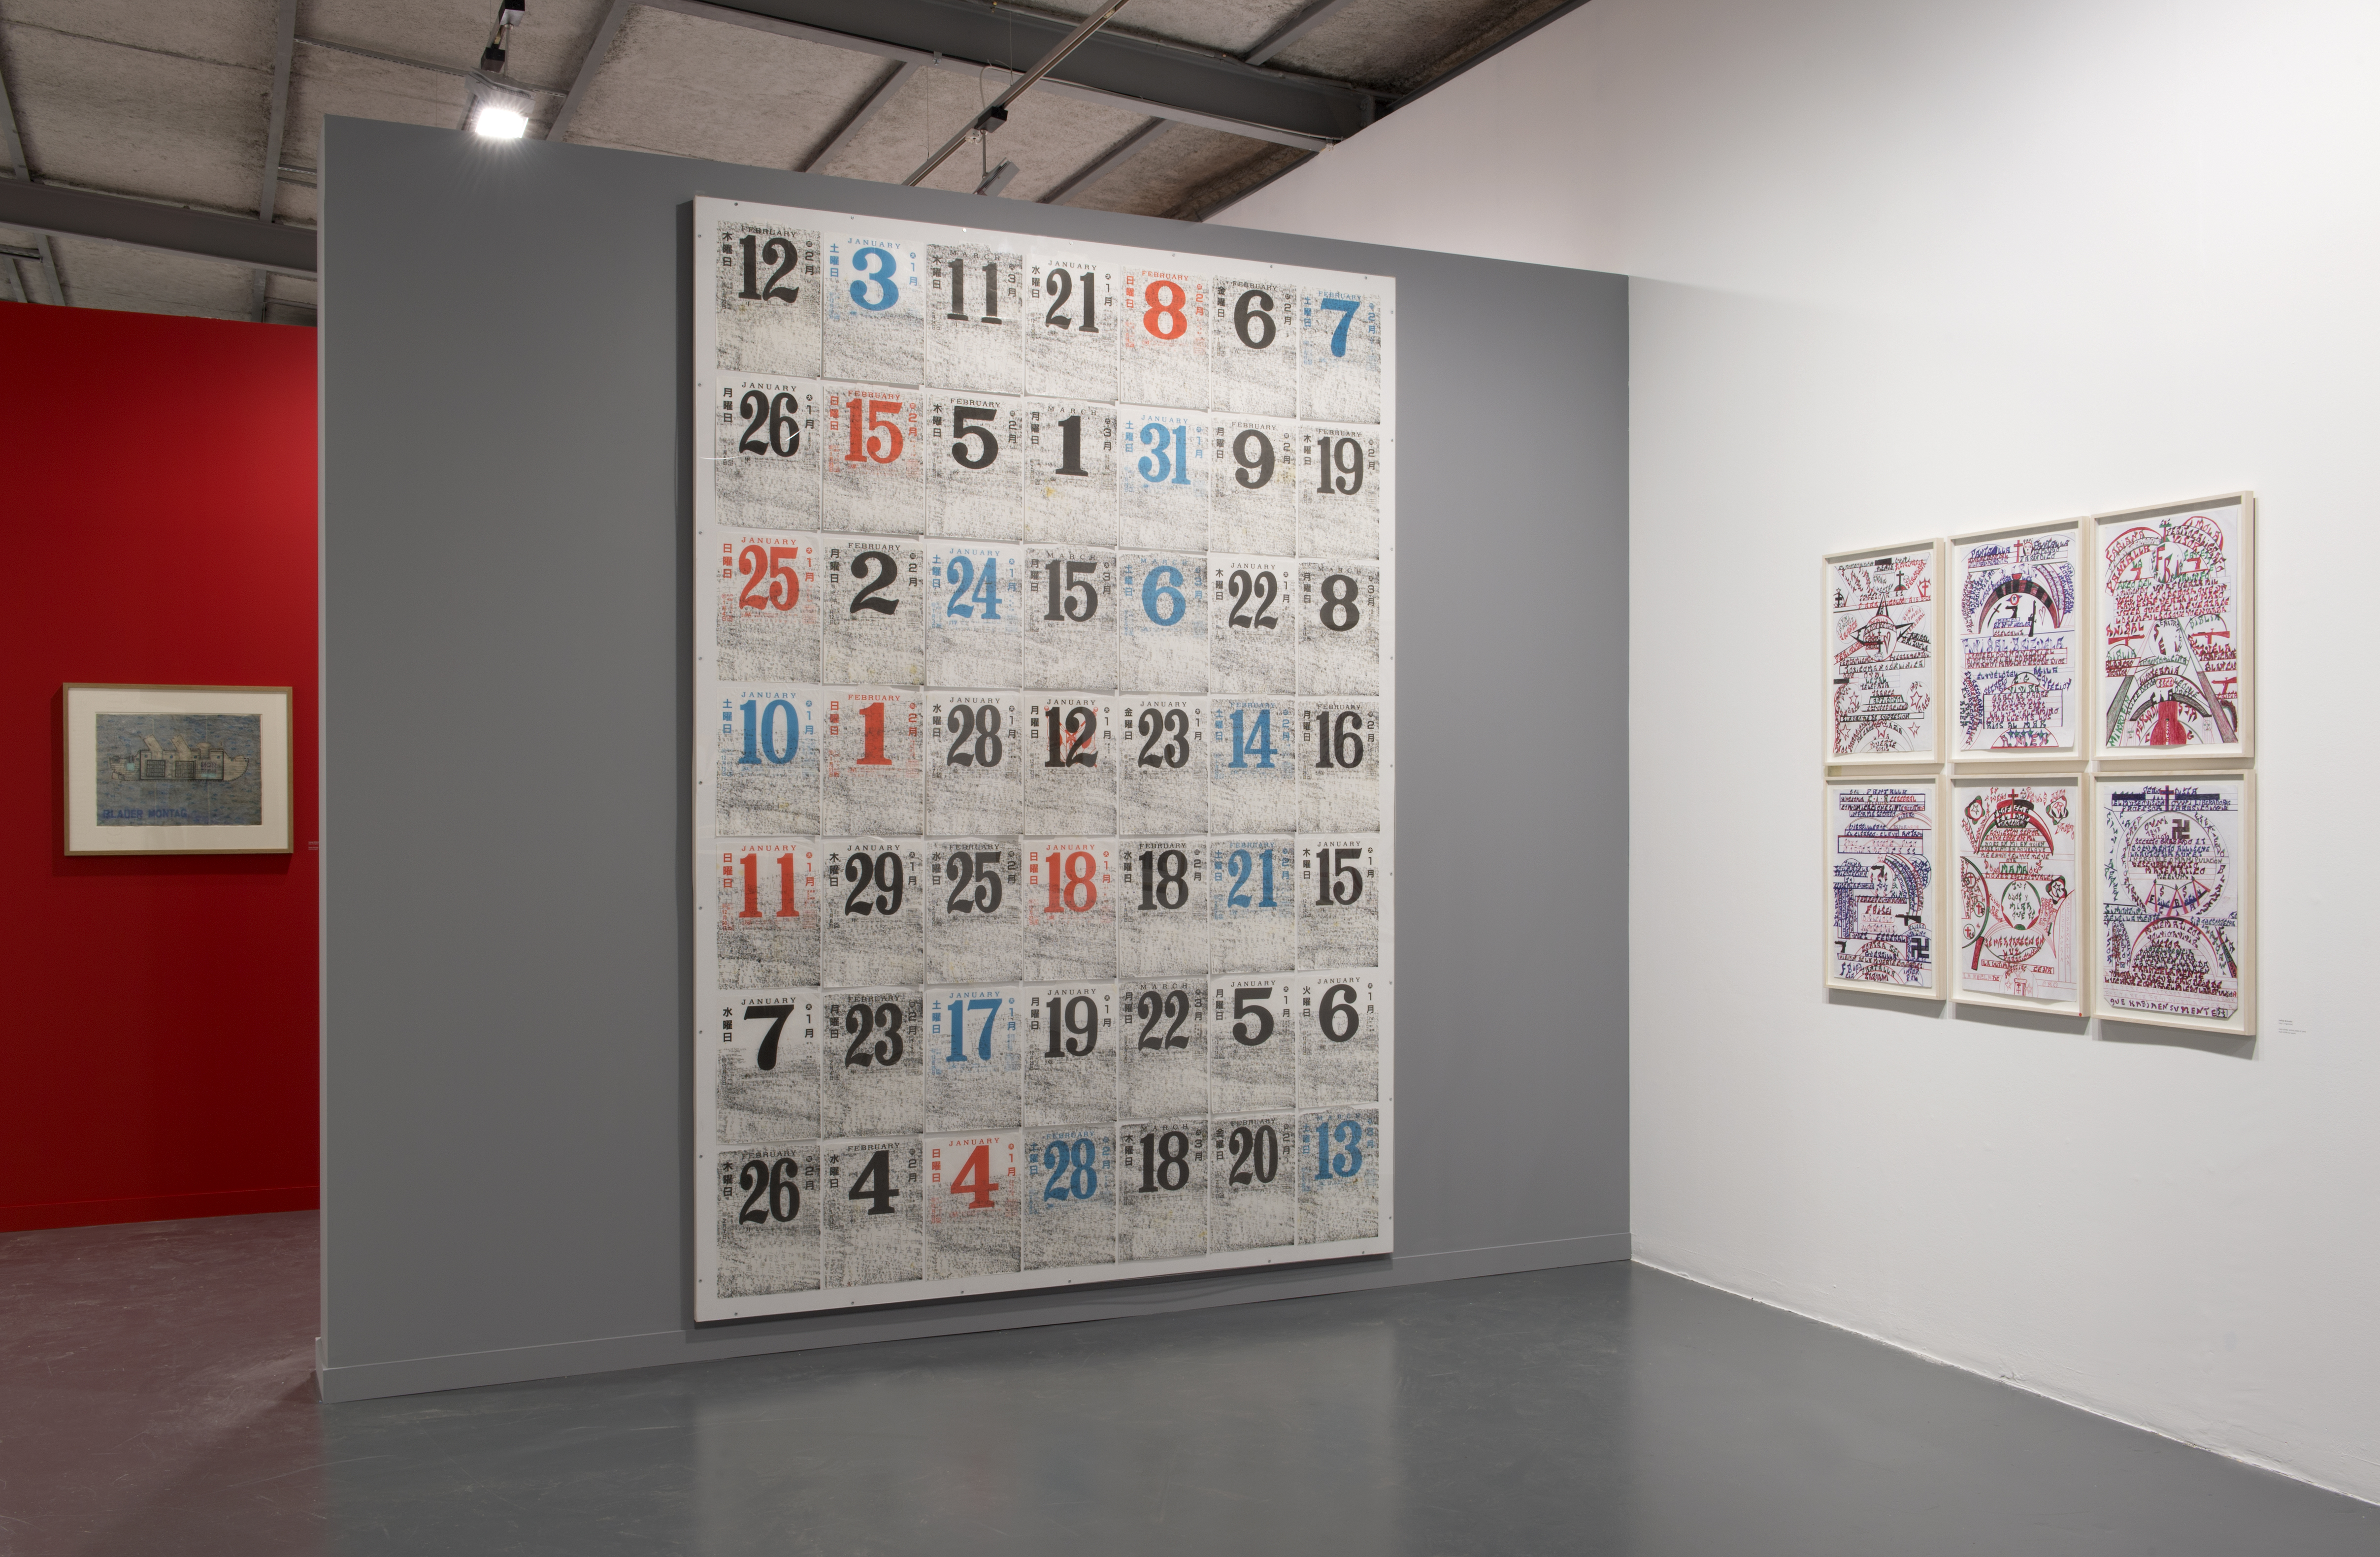 Vue de l'exposition de la collection de Bruno Decharme, Art Brut / collection ABCD © Marc Domage / la maison rouge, 2014-2015